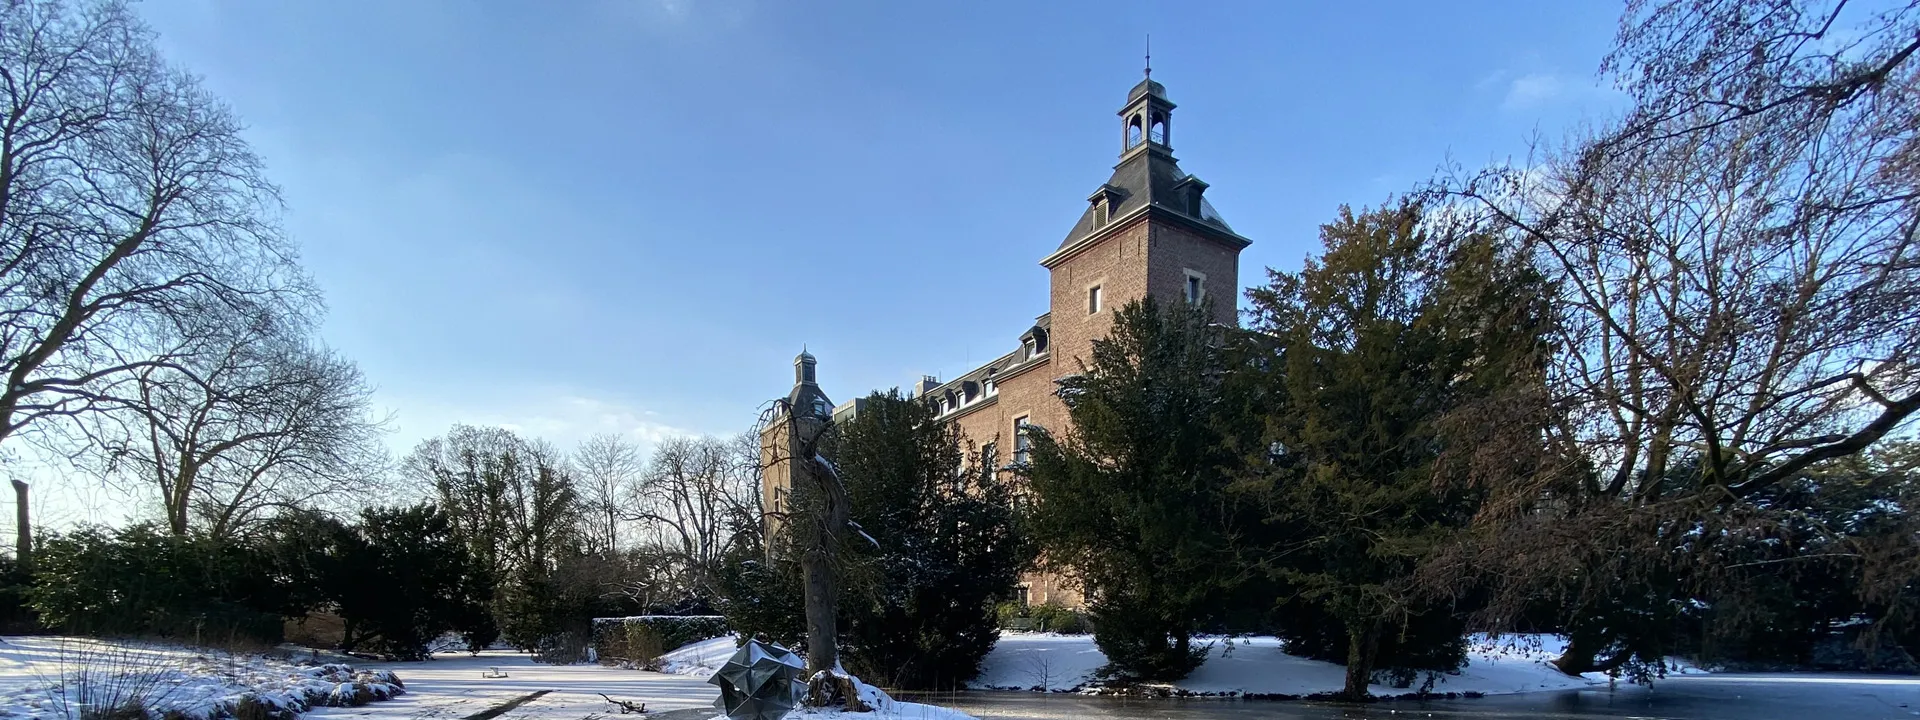 Schloss im Winter HEADER II